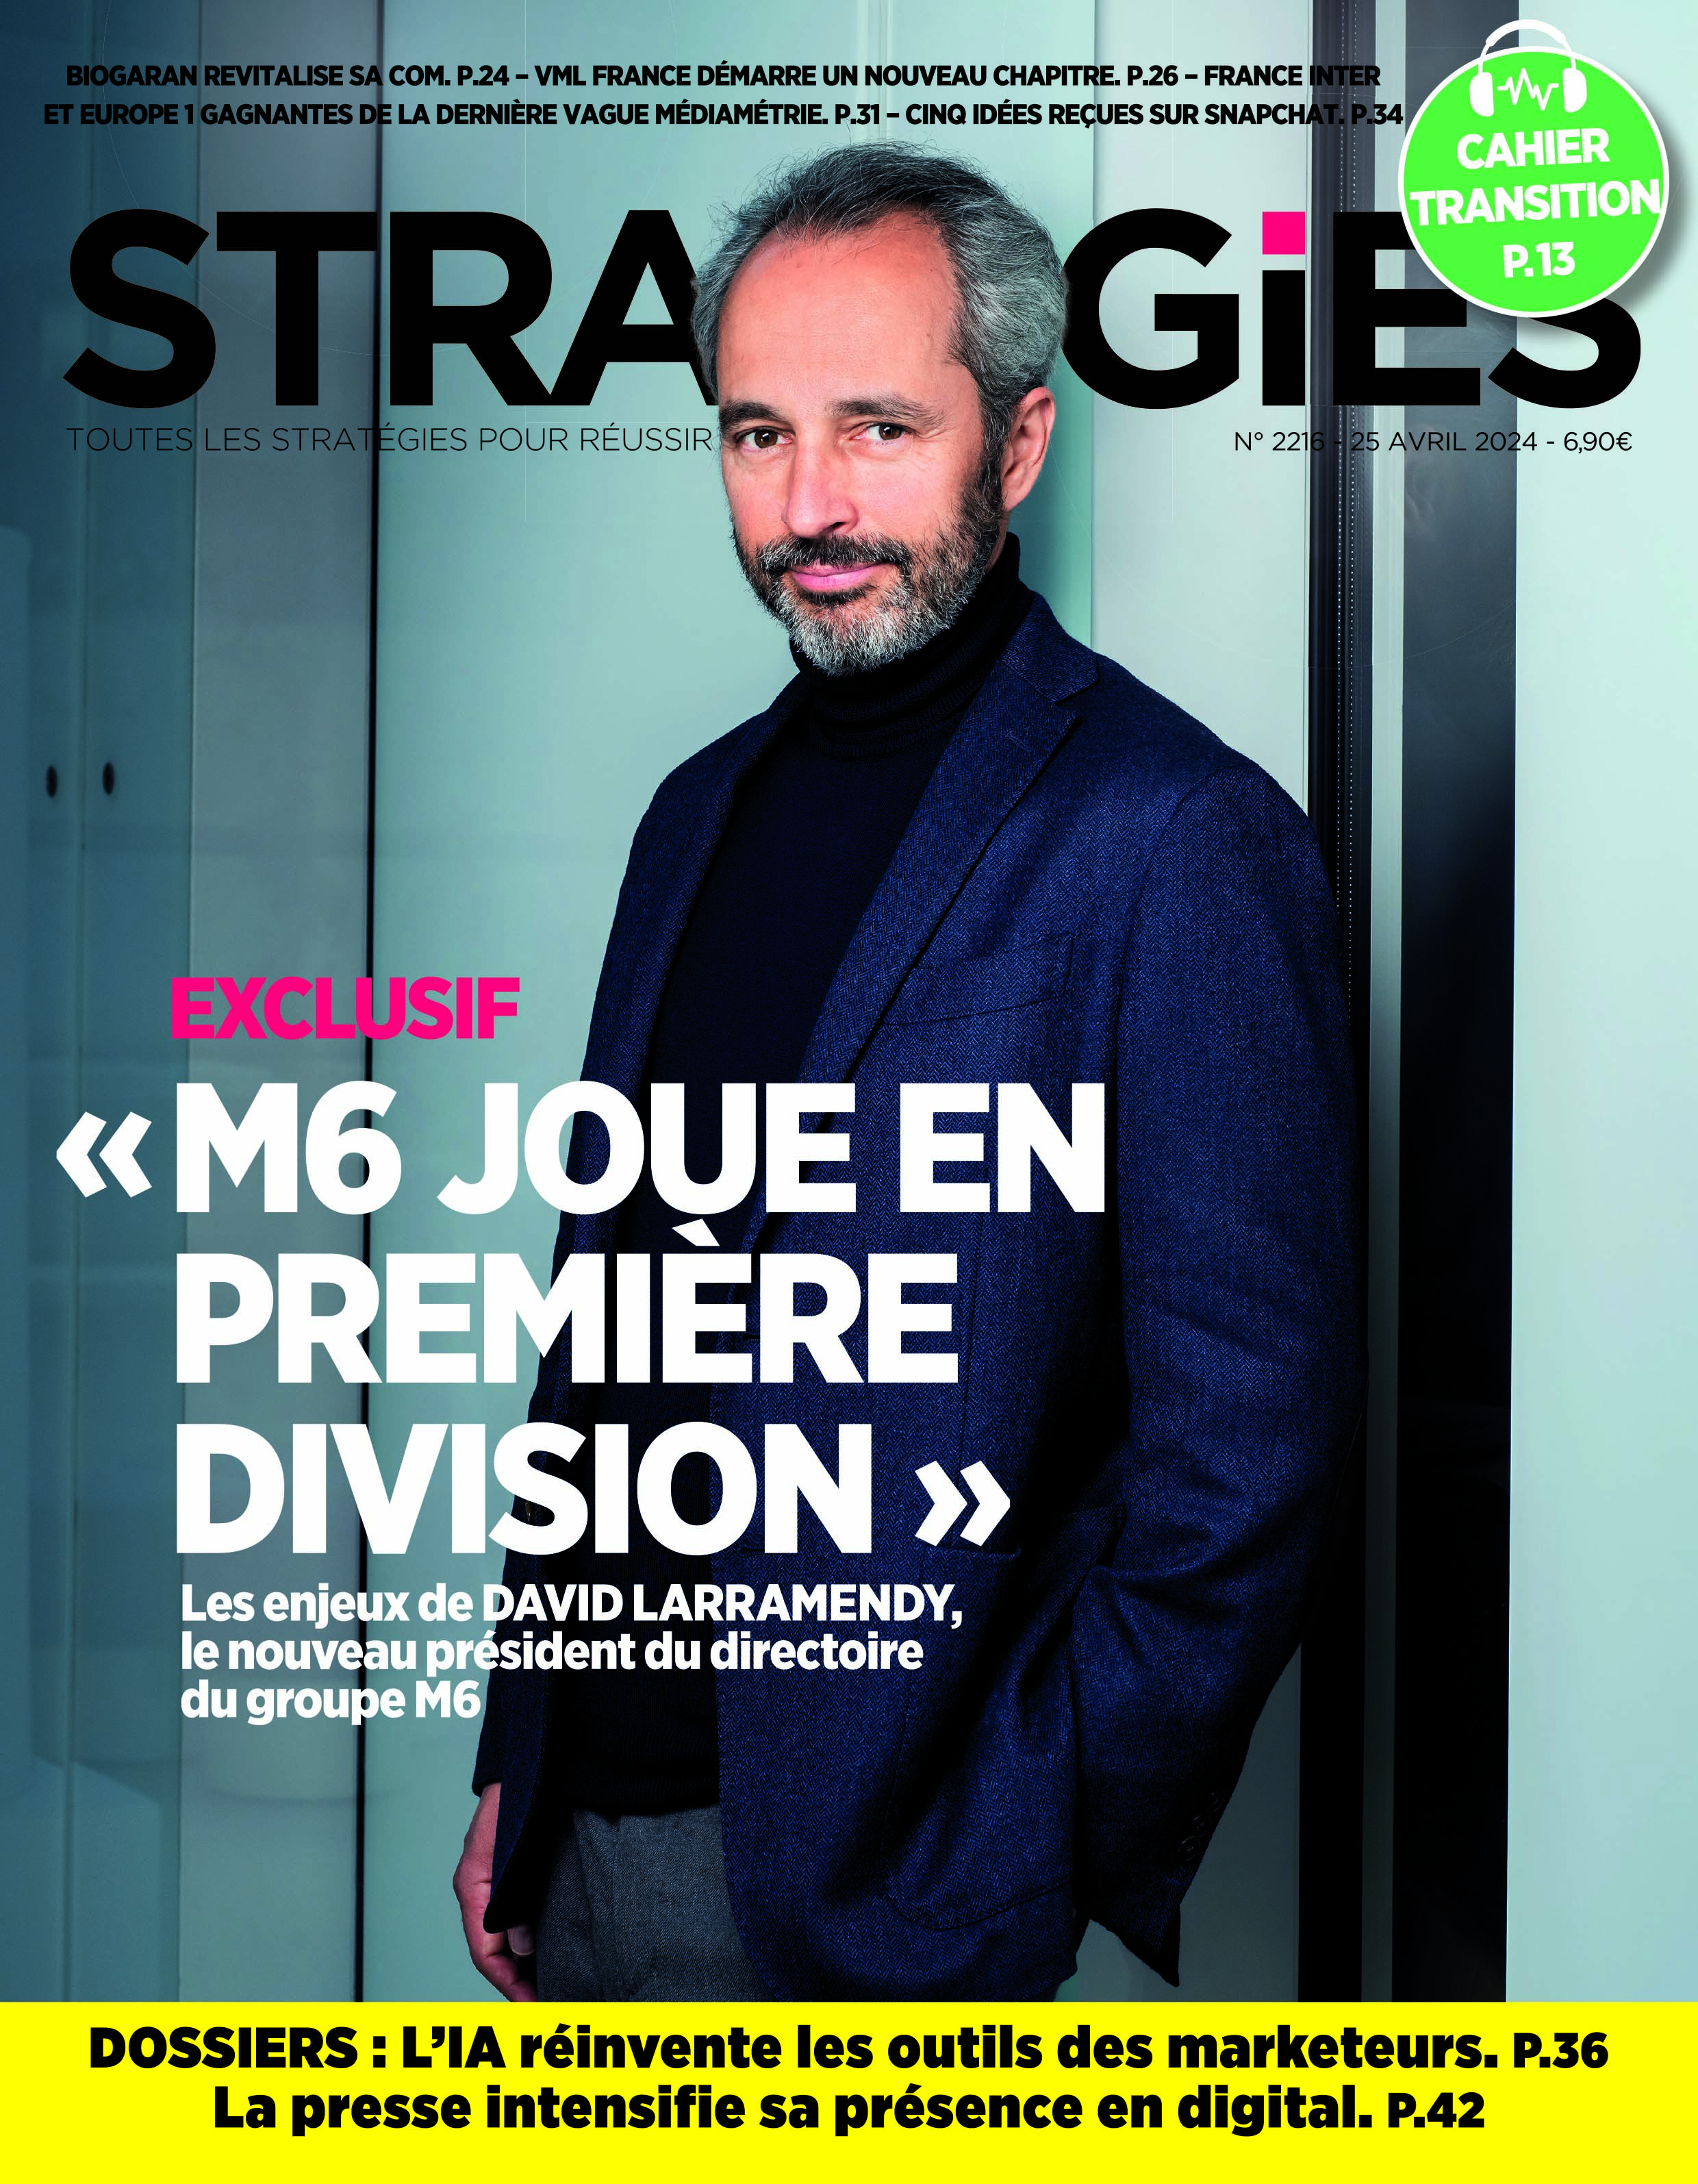 Couverture du magazine Stratégies n°2216 : "David Larramendy dévoile sa feuille de route pour M6"